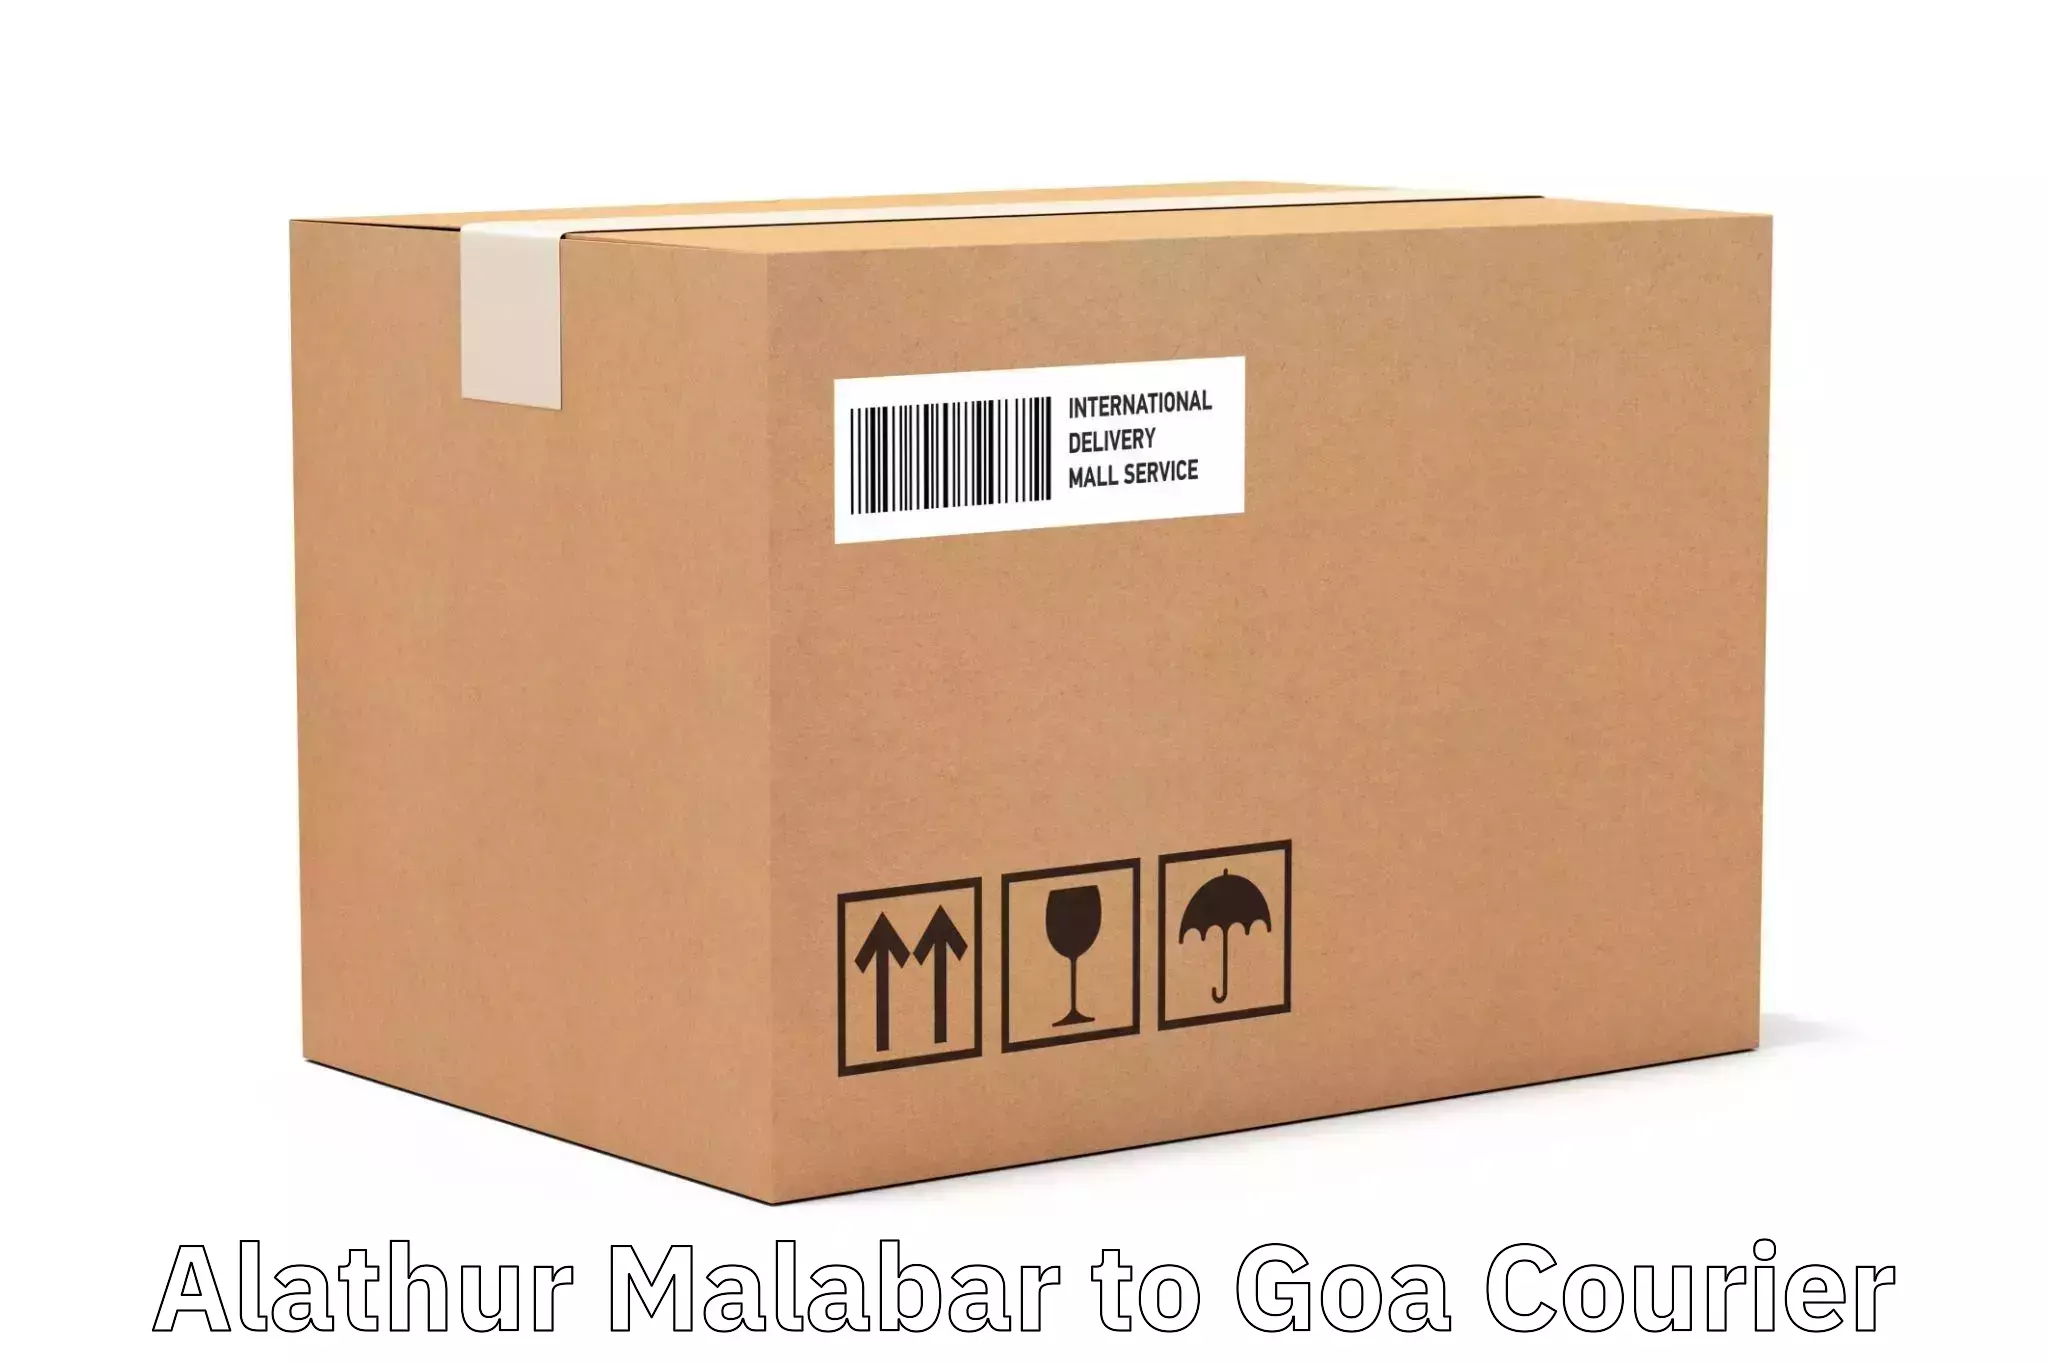 Business courier solutions Alathur Malabar to IIT Goa